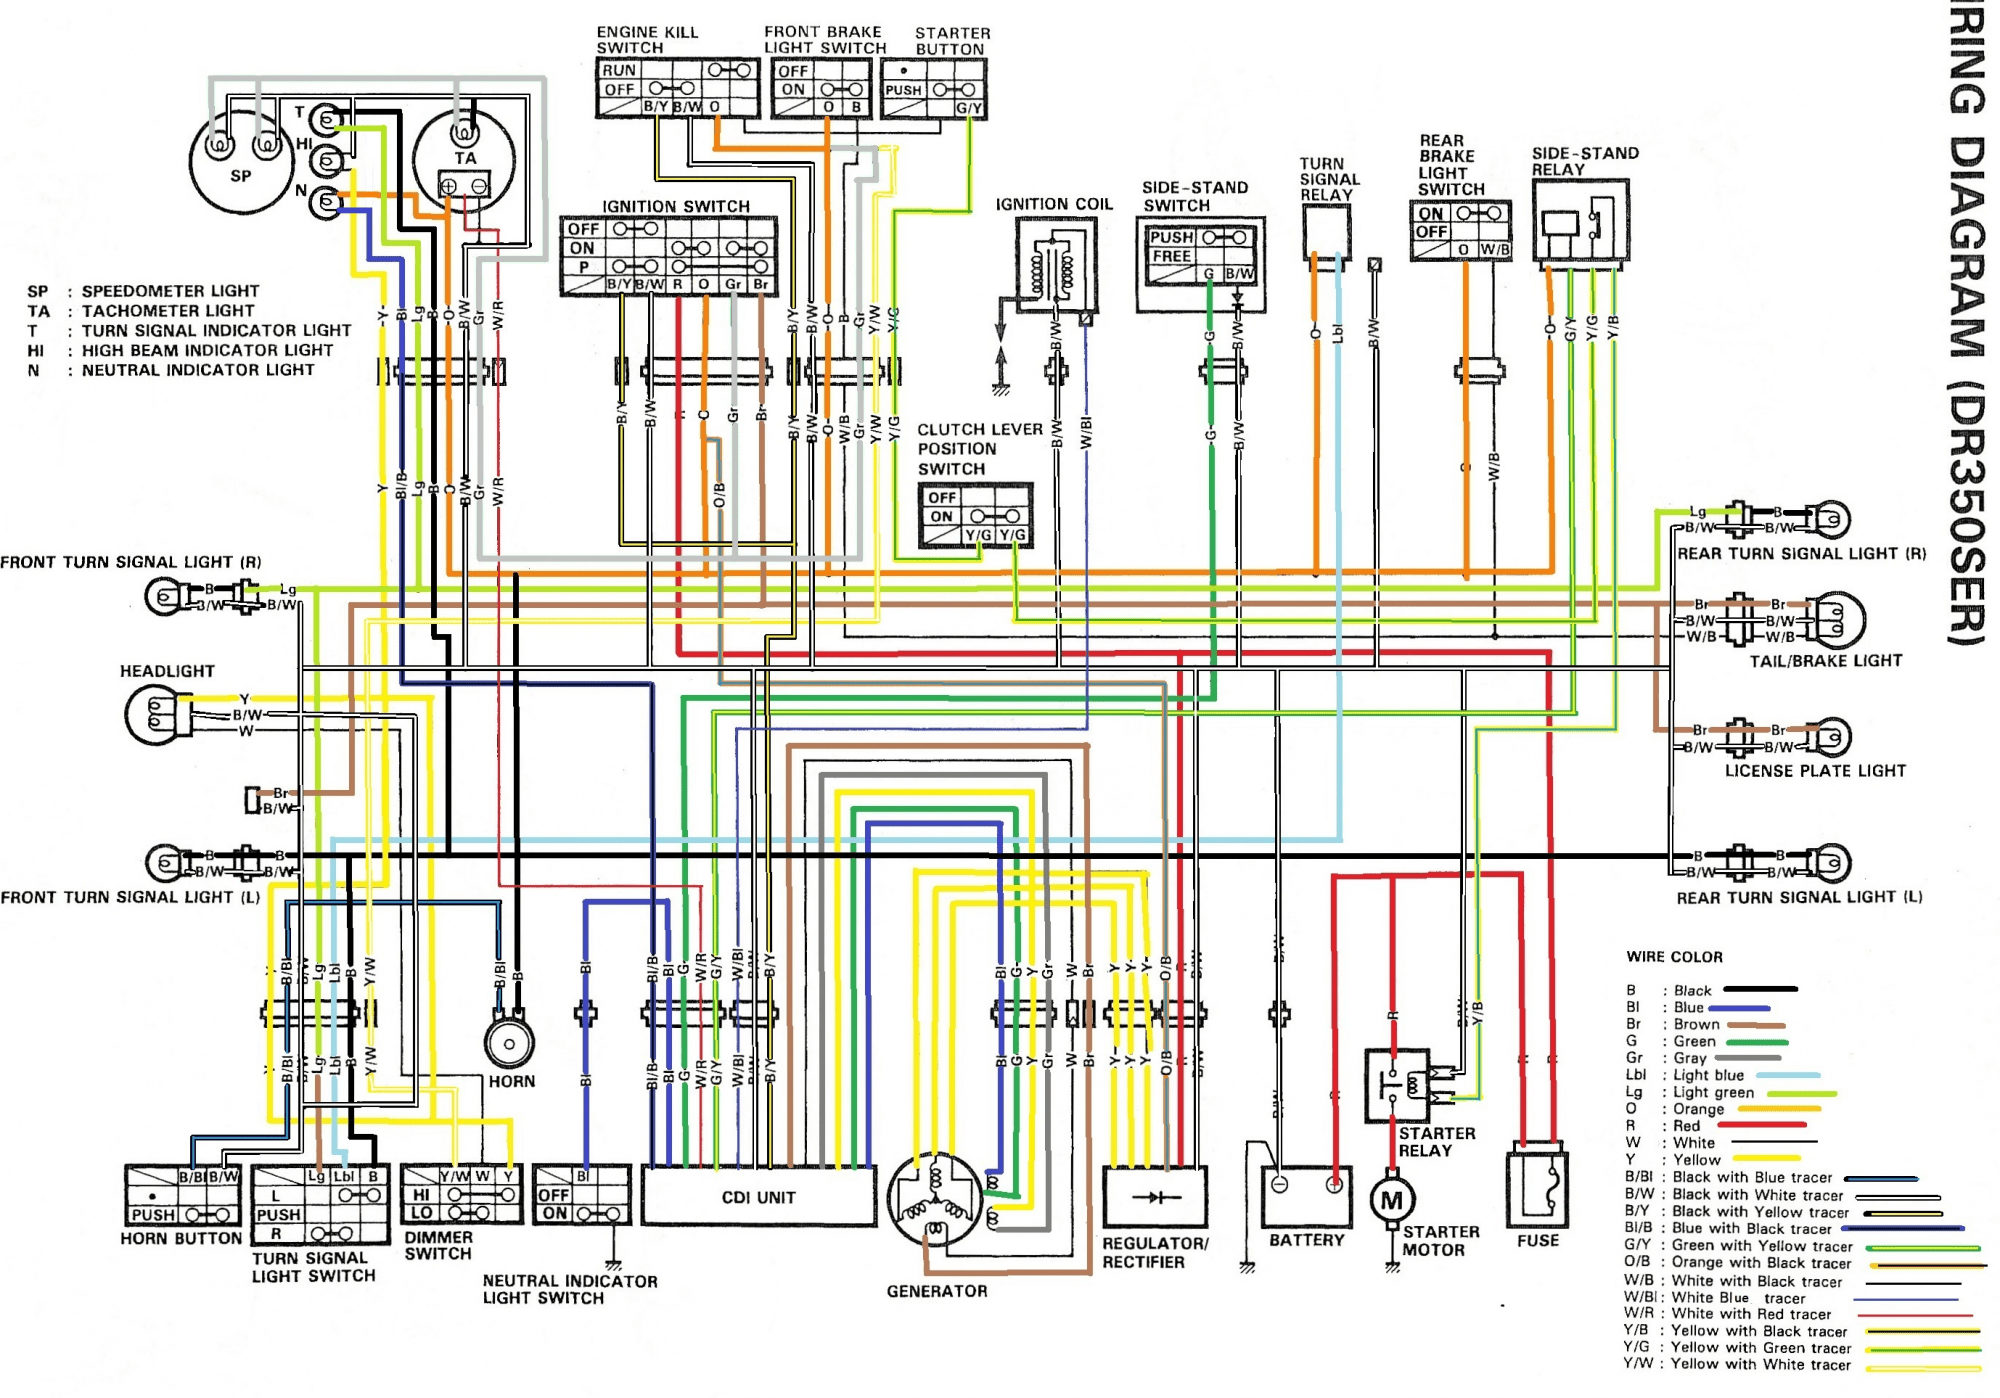 1971 Mgb Wiring Diagram from schematron.org